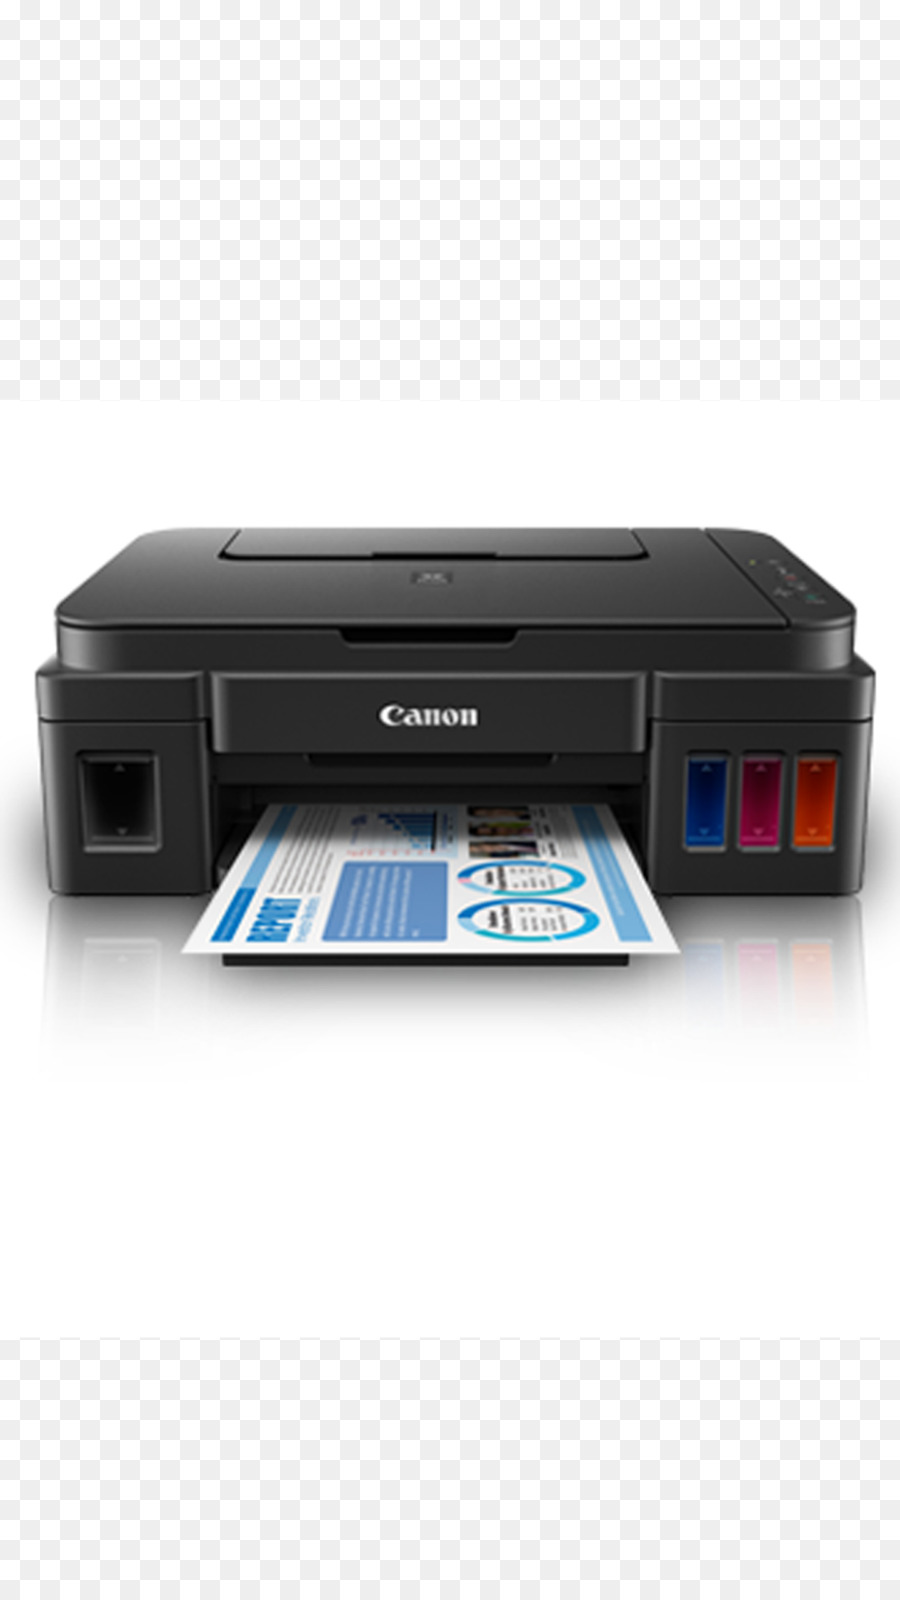 Canon stampante multifunzione a Getto d'inchiostro di stampa ピクサス - Stampante